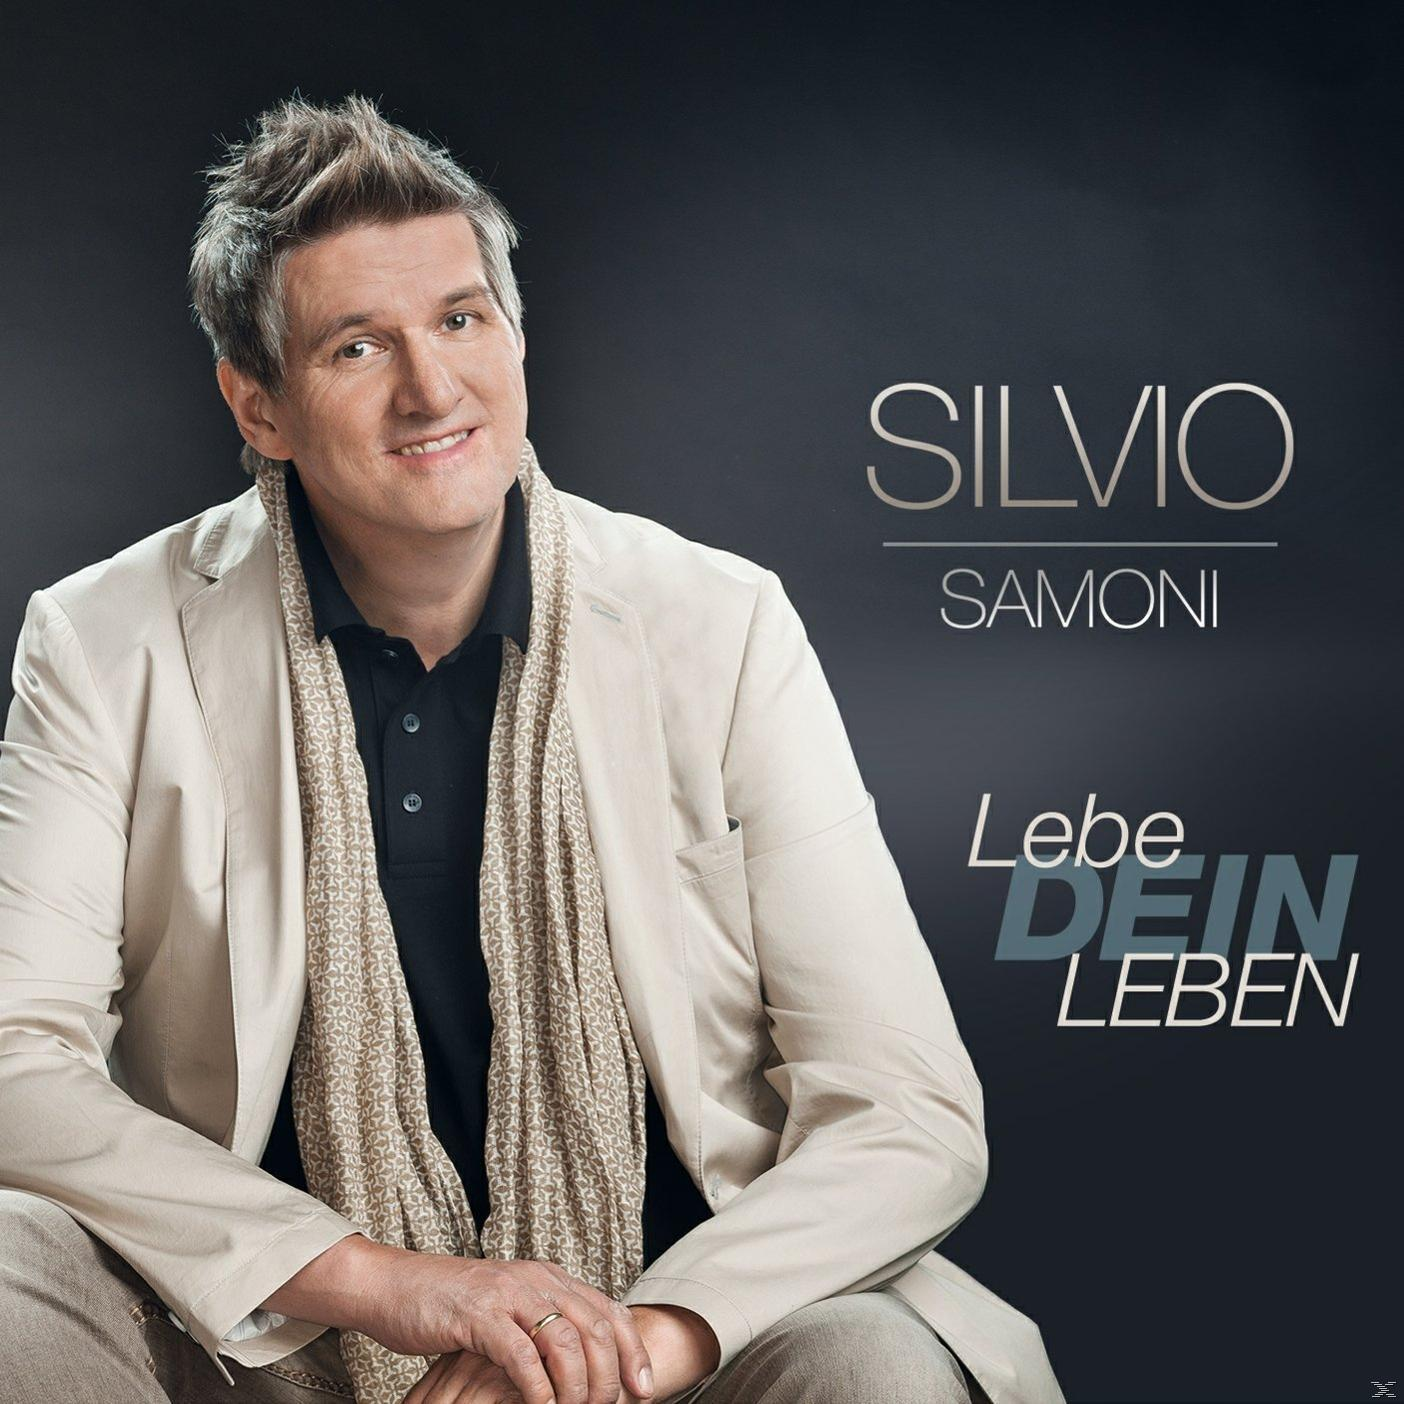 Lebe Leben Samoni Silvio Dein - (CD) -